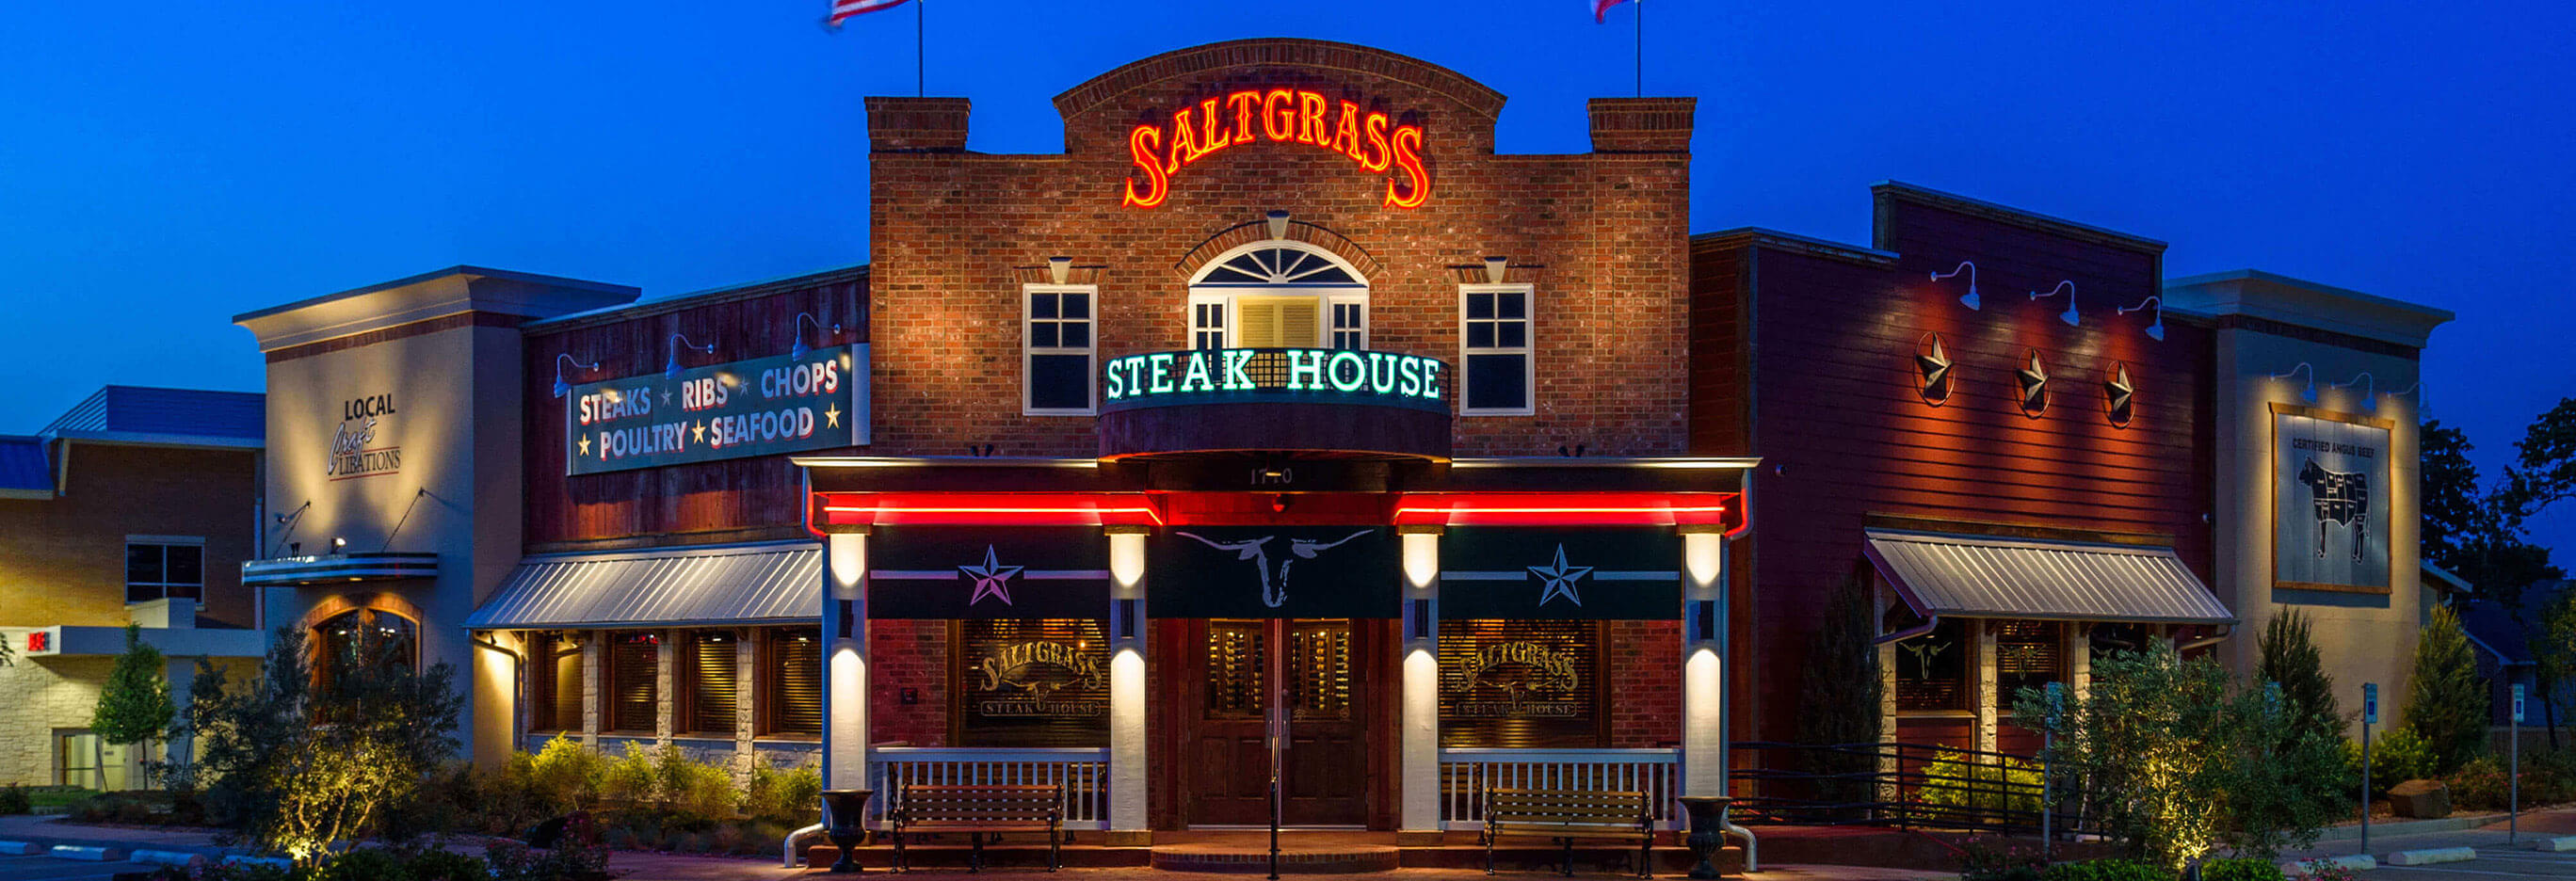 Salt Grass Steak House